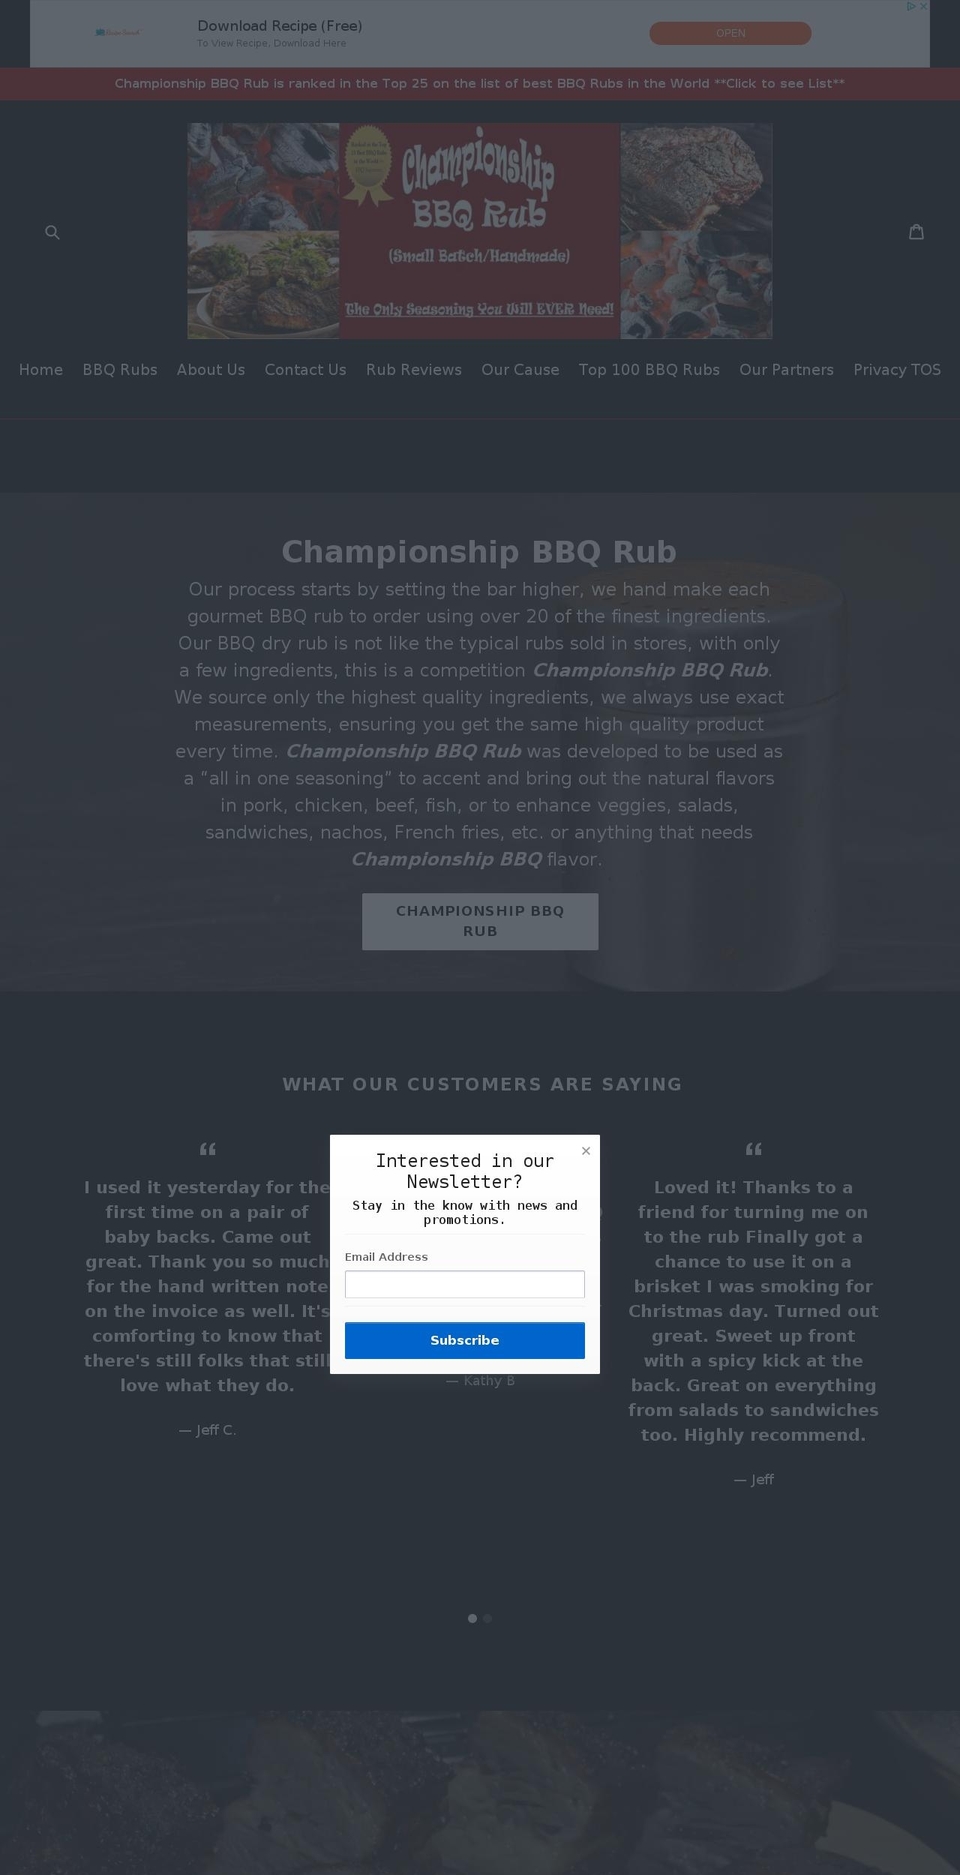 Champion Shopify theme site example championshipbbqrub.com